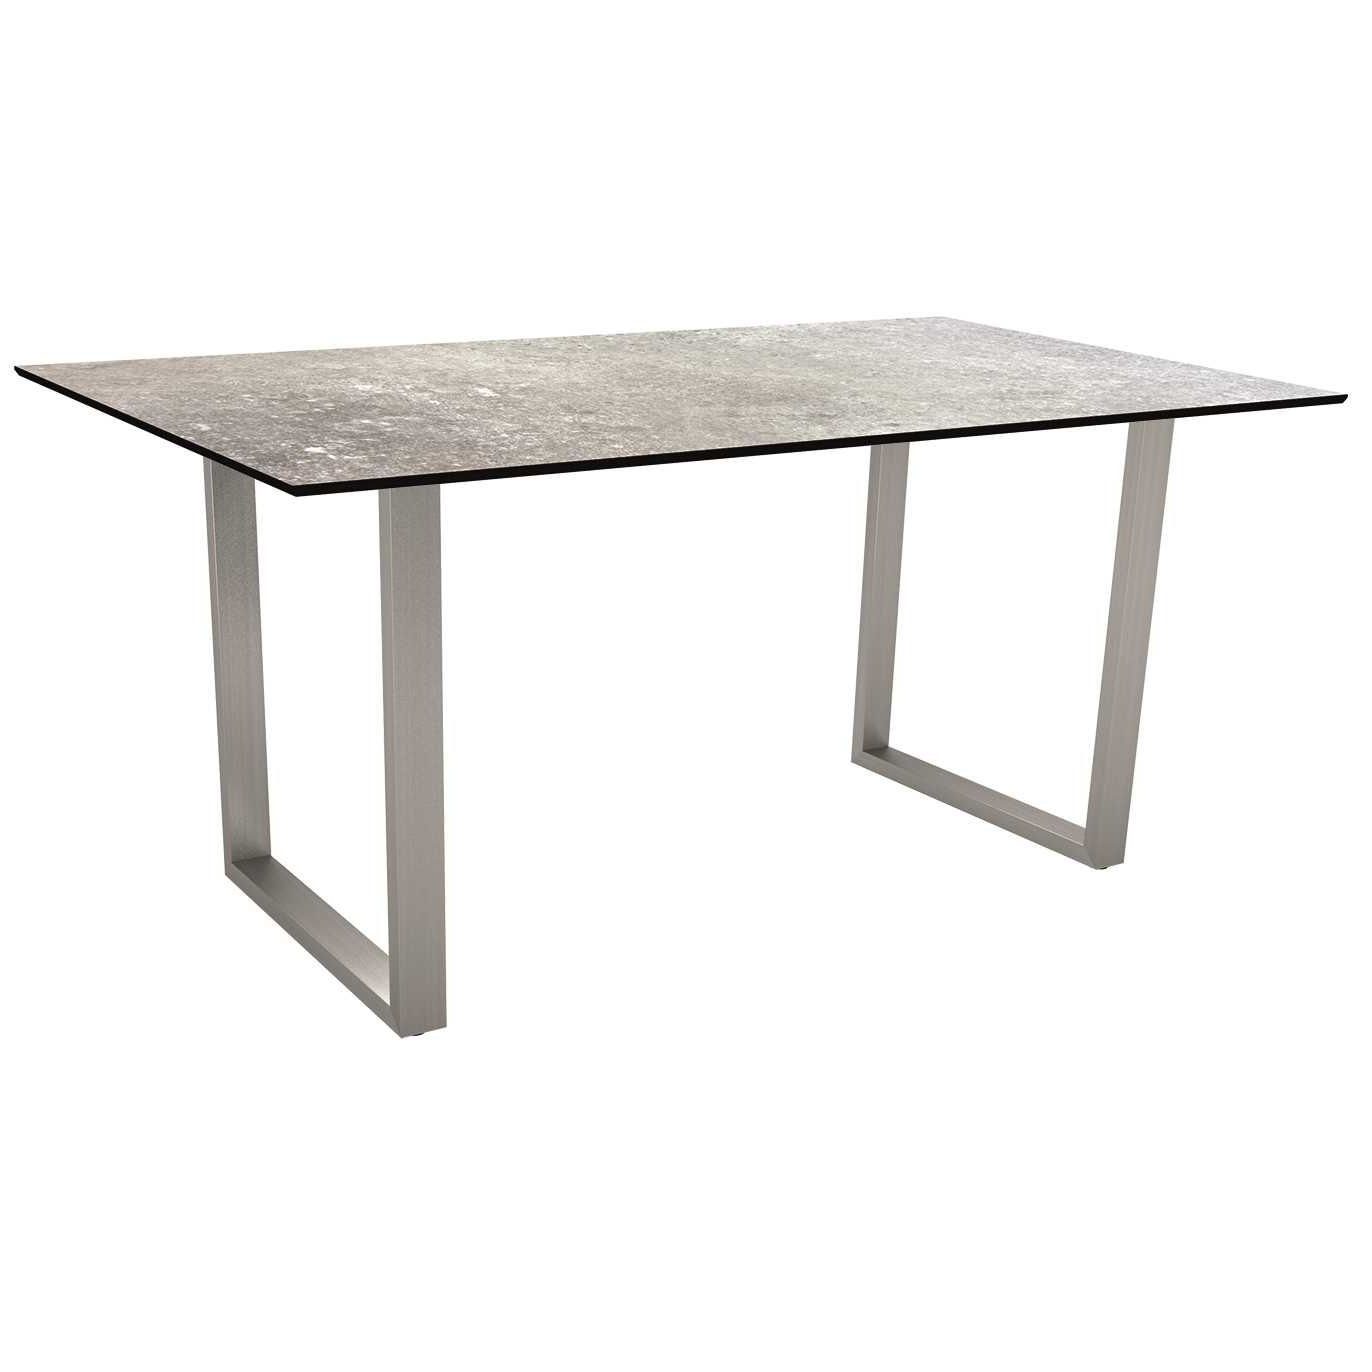 Stern Kufentisch, Gestell Edelstahl, Tischplatte HPL Vintage stone, Tischgröße: 160x90 cm